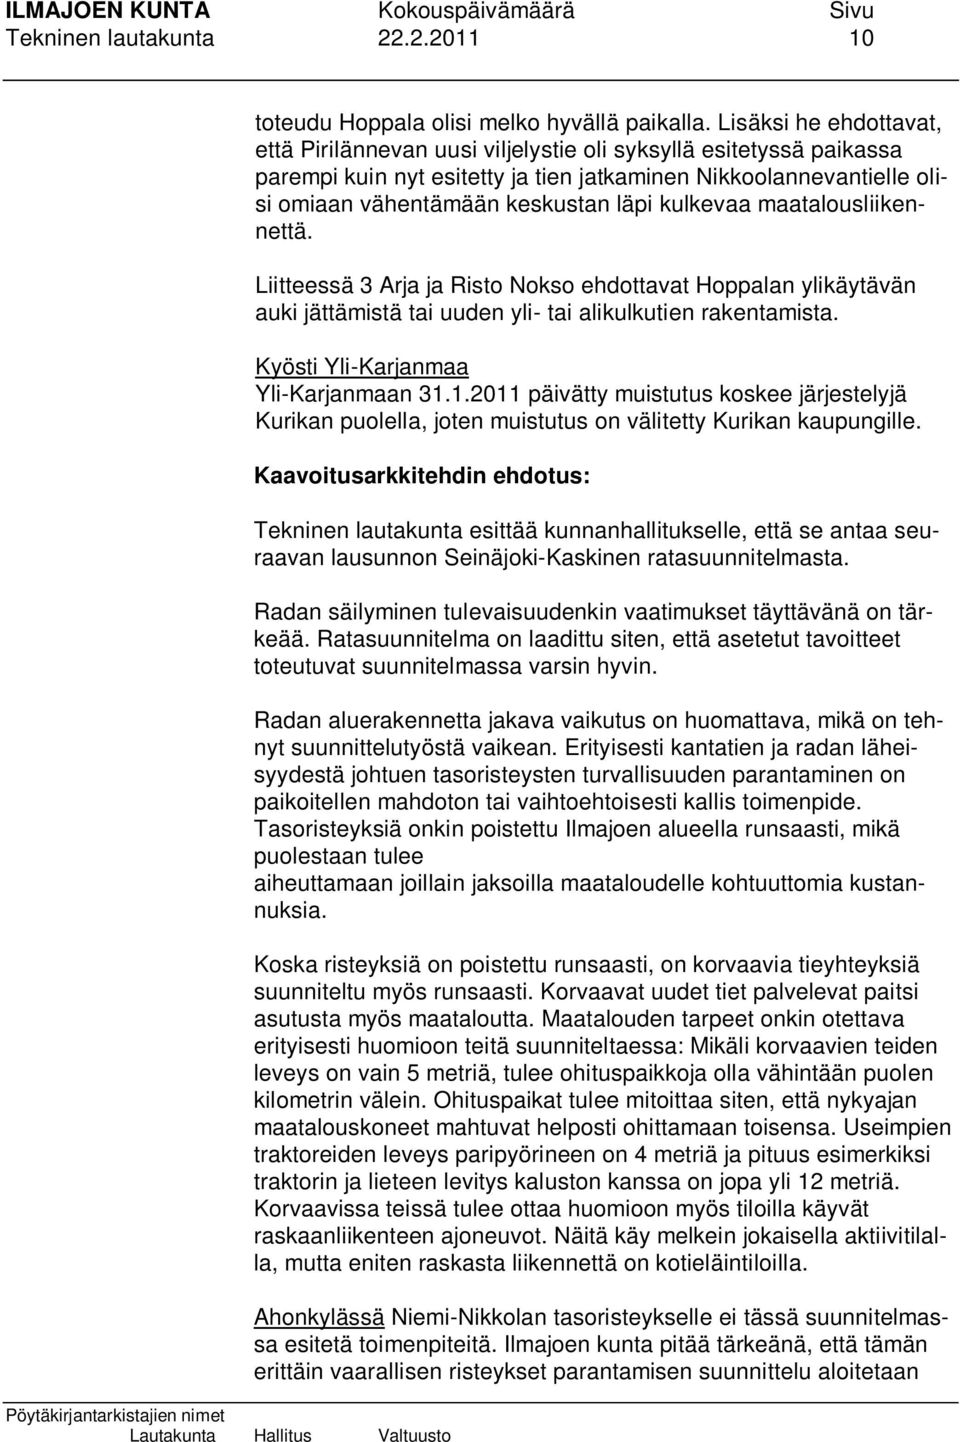 kulkevaa maatalousliikennettä. Liitteessä 3 Arja ja Risto Nokso ehdottavat Hoppalan ylikäytävän auki jättämistä tai uuden yli- tai alikulkutien rakentamista. Kyösti Yli-Karjanmaa Yli-Karjanmaan 31.